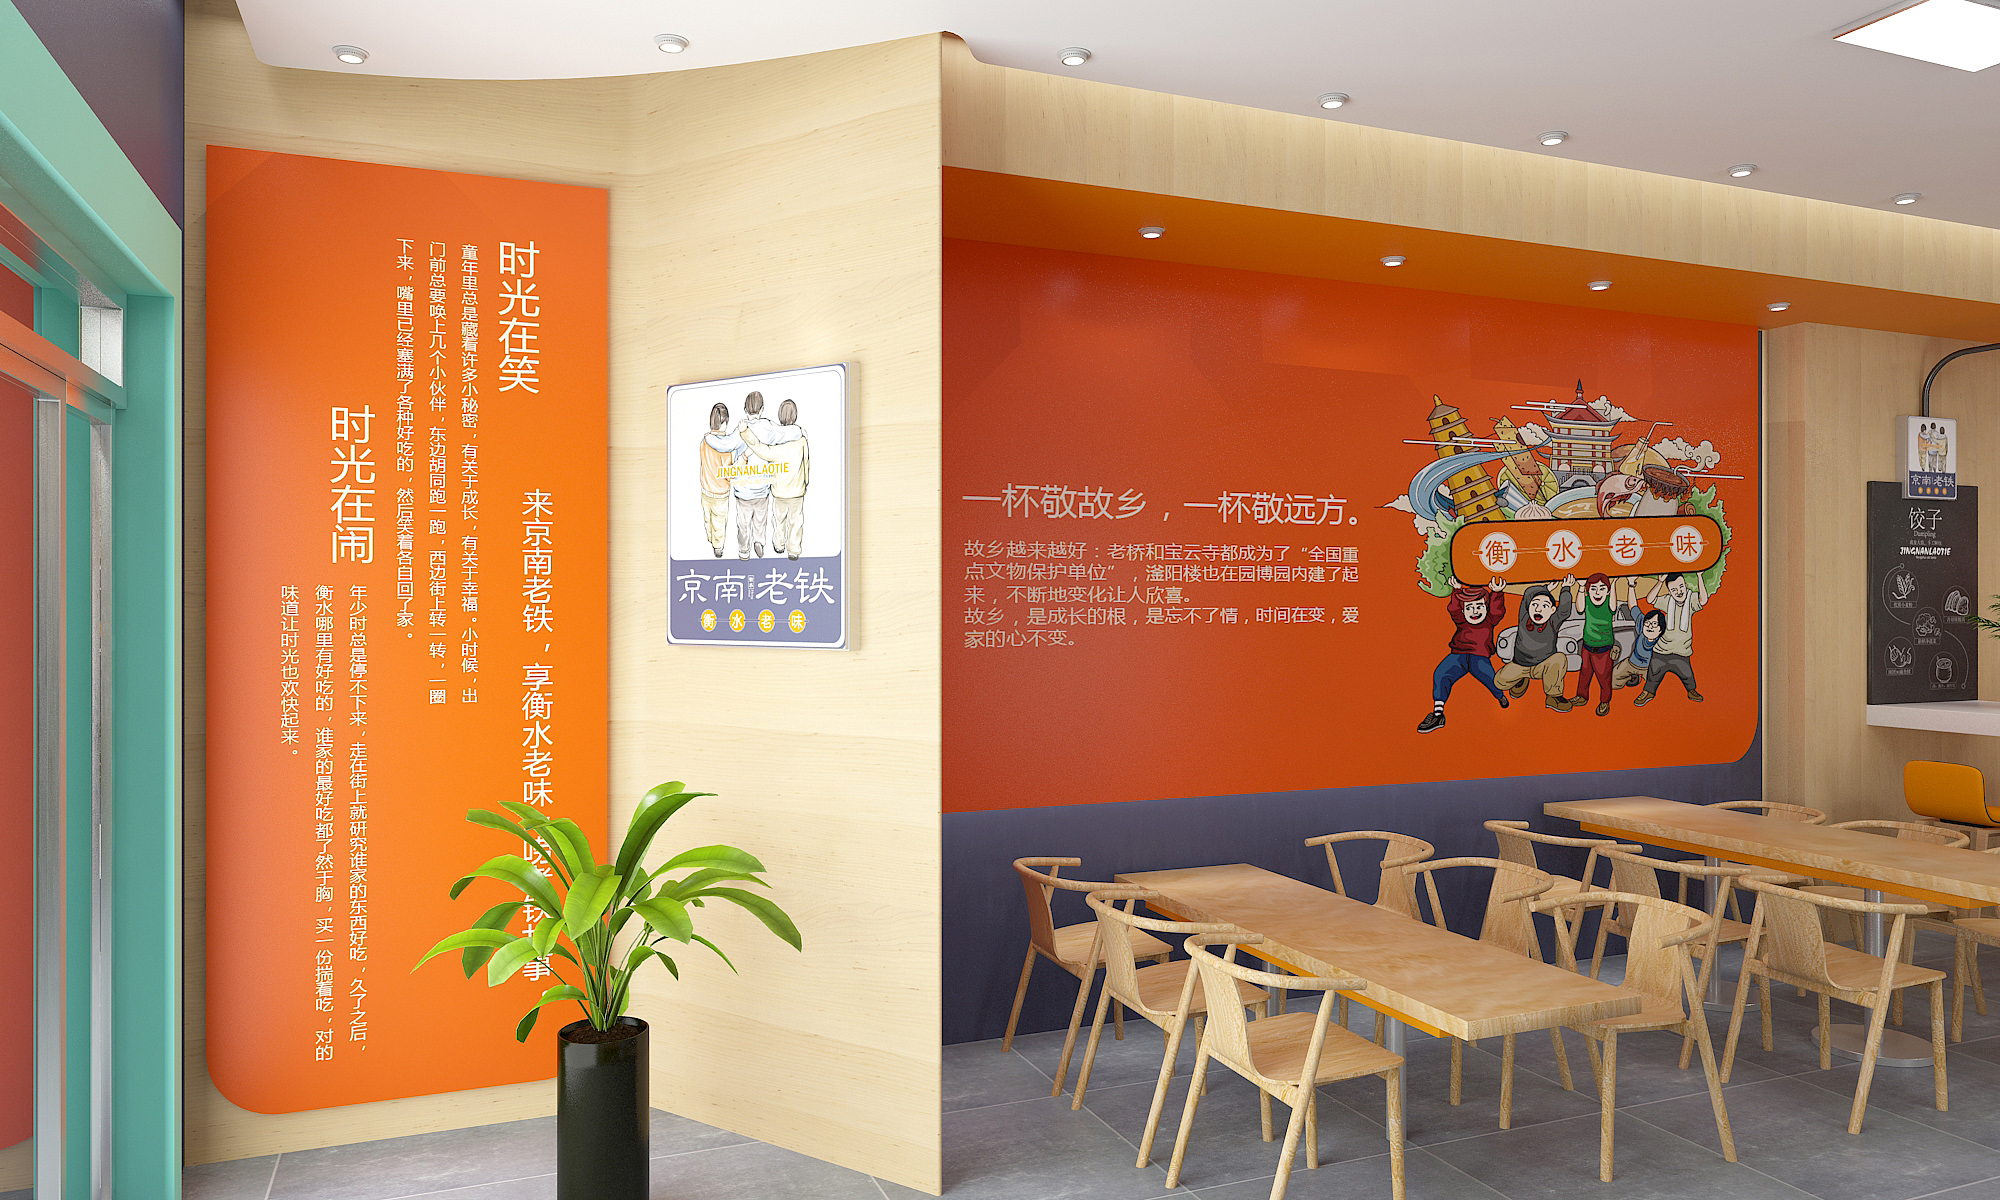 京南老铁中餐厅—徐桂亮品牌设计